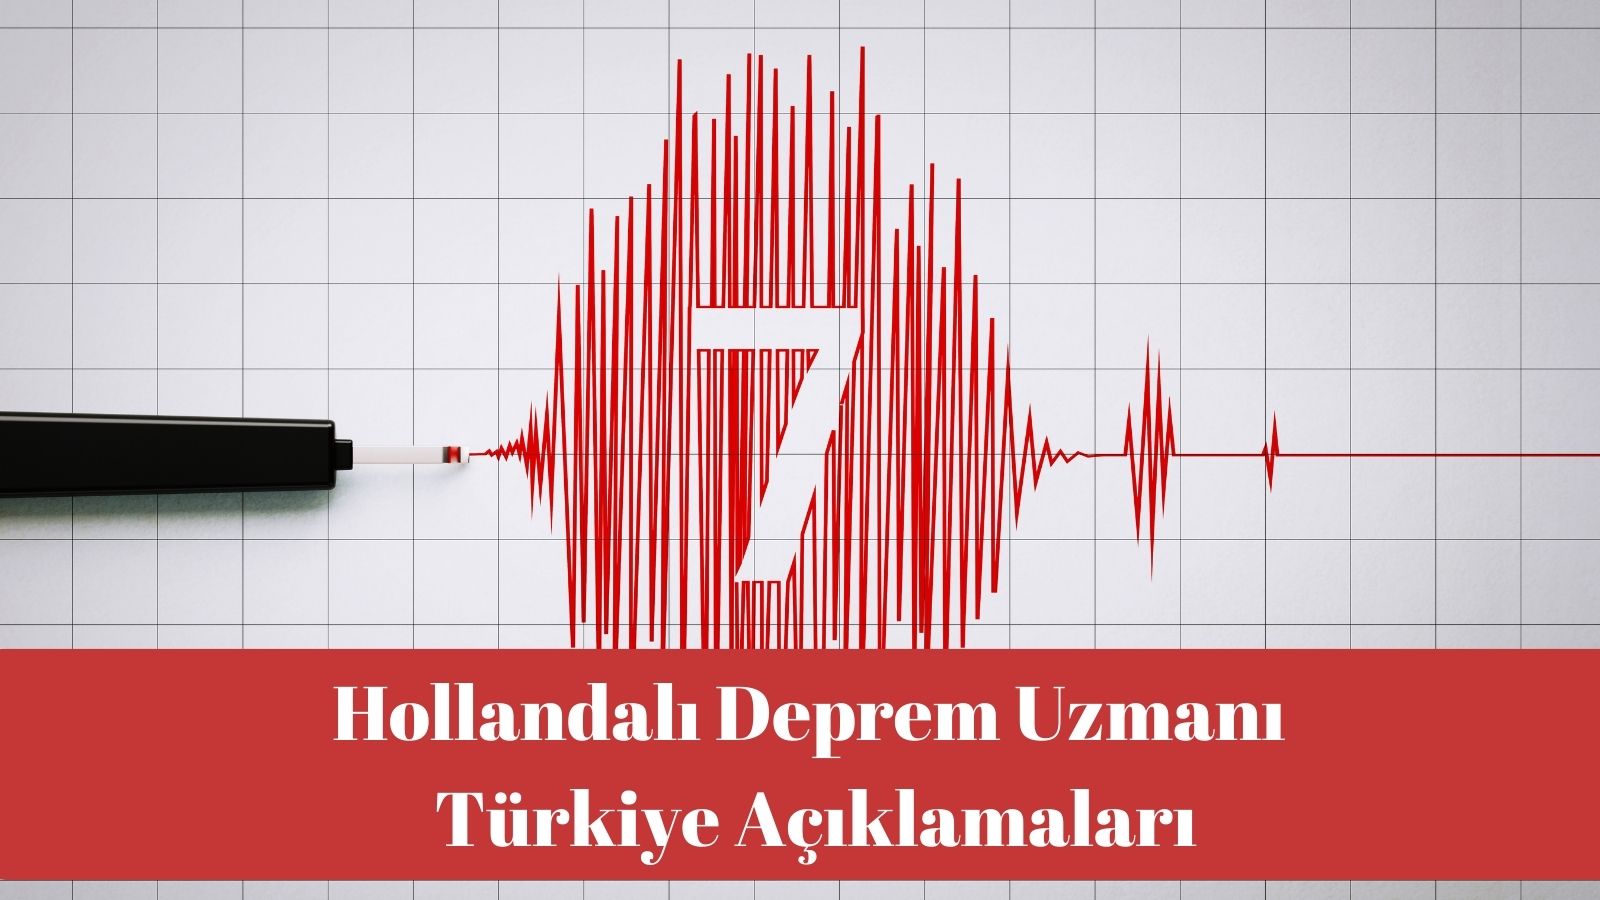 Hollandalı Deprem Uzmanı Türkiye Açıklamaları